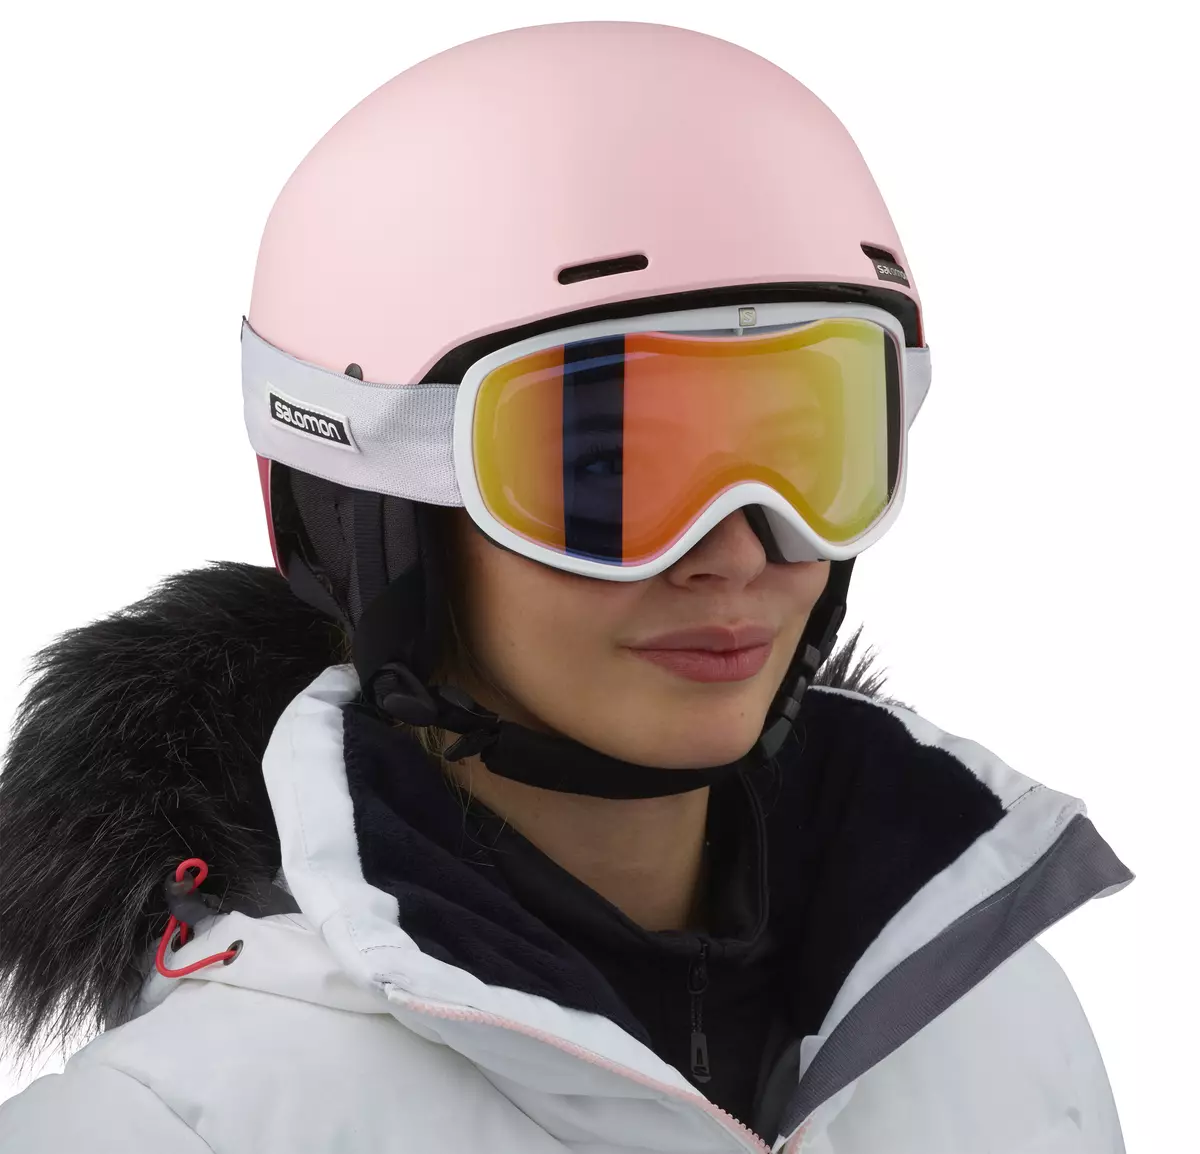 Skibrille: Wie kann man sie auswählen? Baby und andere Gläser mit Dioptrien, Sportmodellen zum Skifahren. Abdeckungen für Gläser. 8403_42